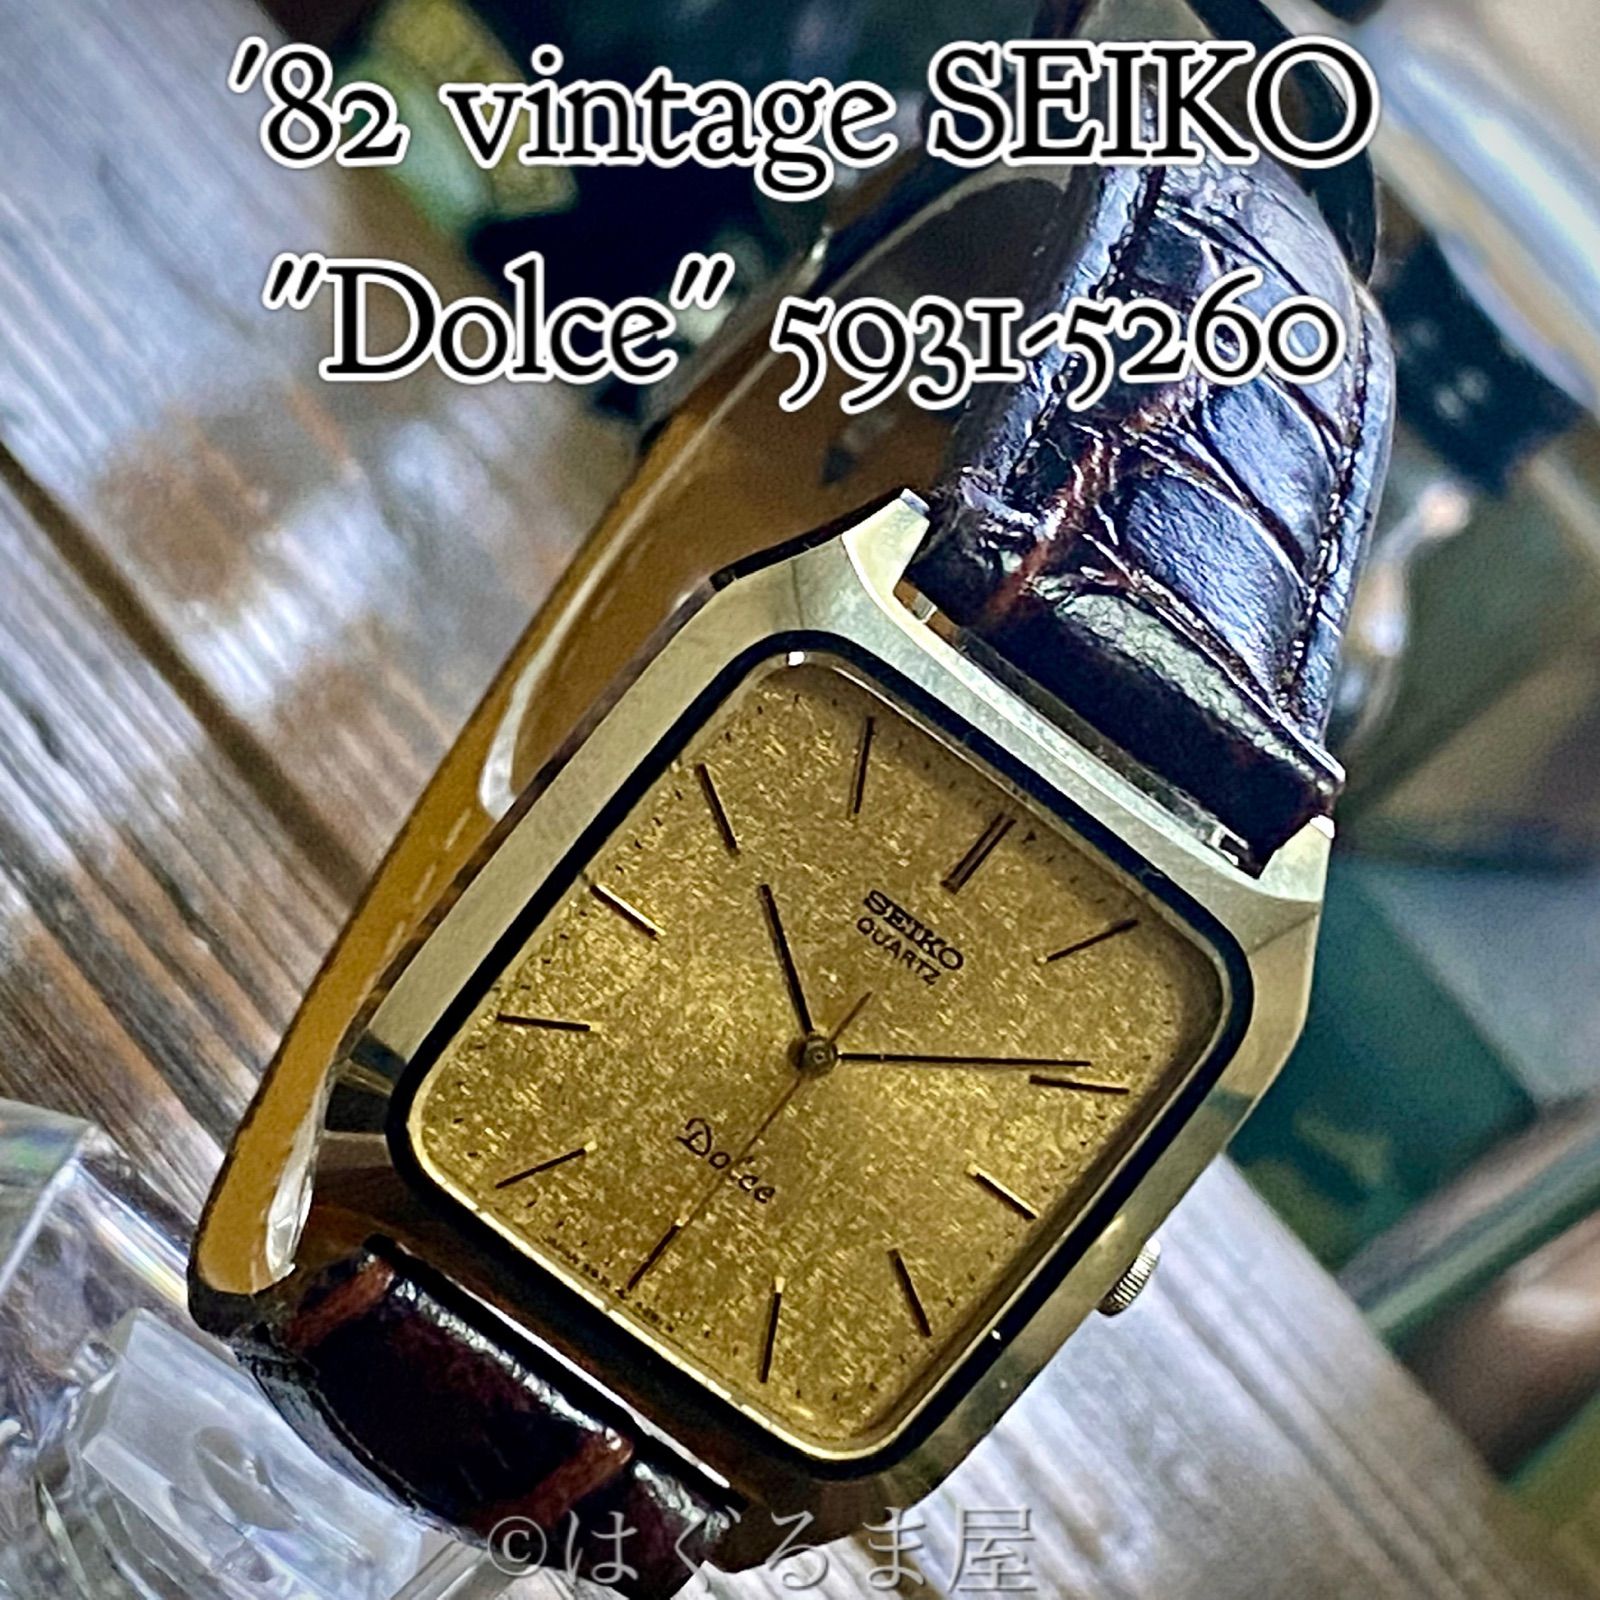 セイコー ドルチェ ドレスウォッチ ゴールド - 腕時計(アナログ)